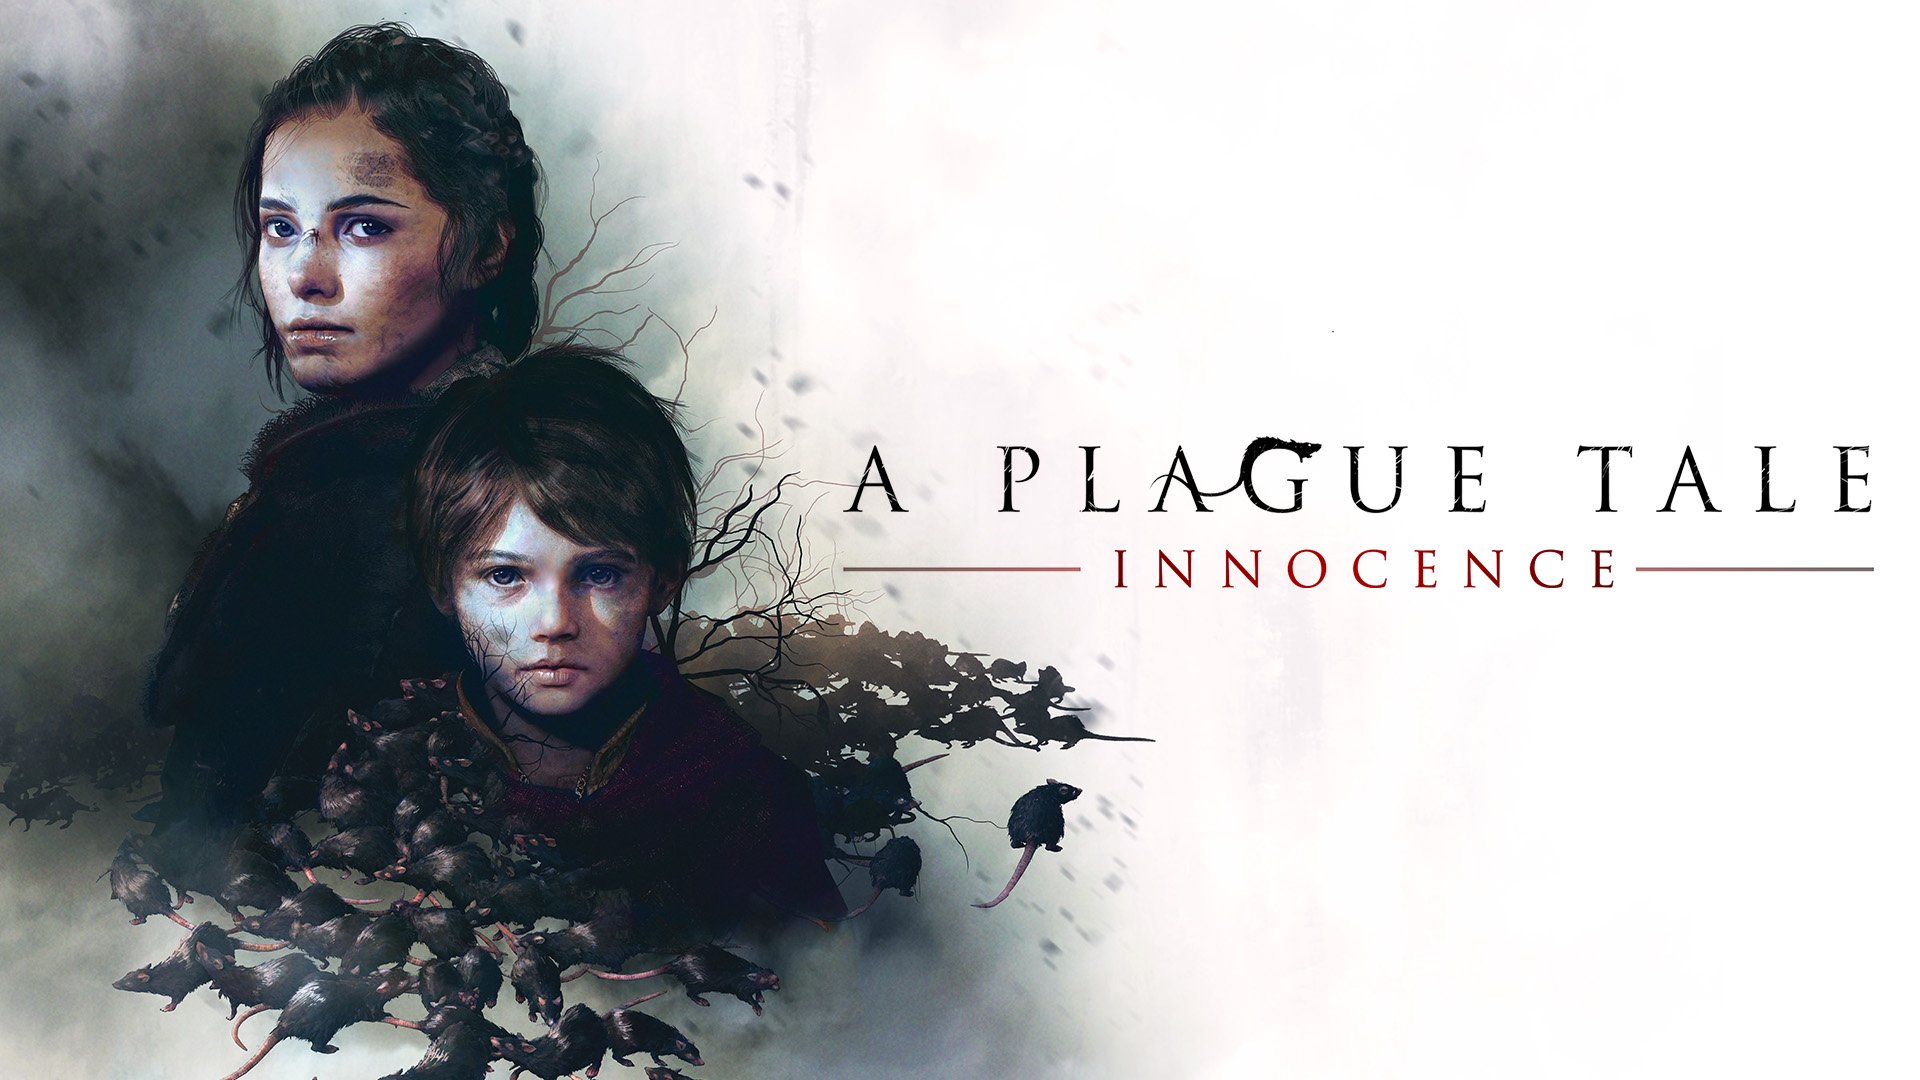 A Plague Tale: Requiem - Cloud Version, Aplicações de download da Nintendo  Switch, Jogos